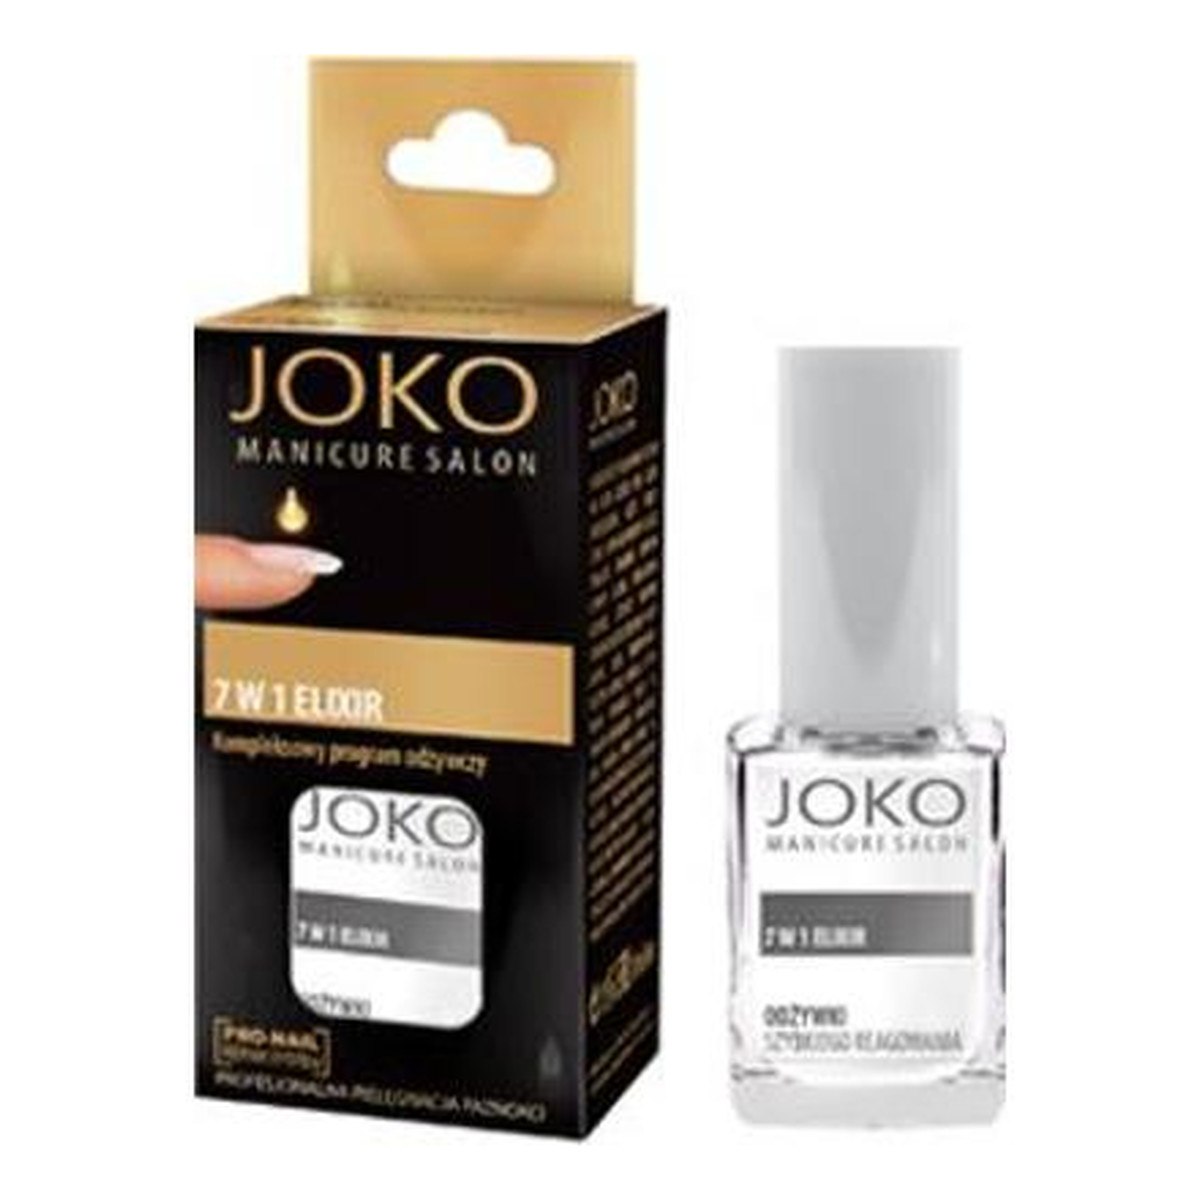 Joko Manicure Salon Odżywka do paznokci 7w1 Eliksir odżywczy 10ml